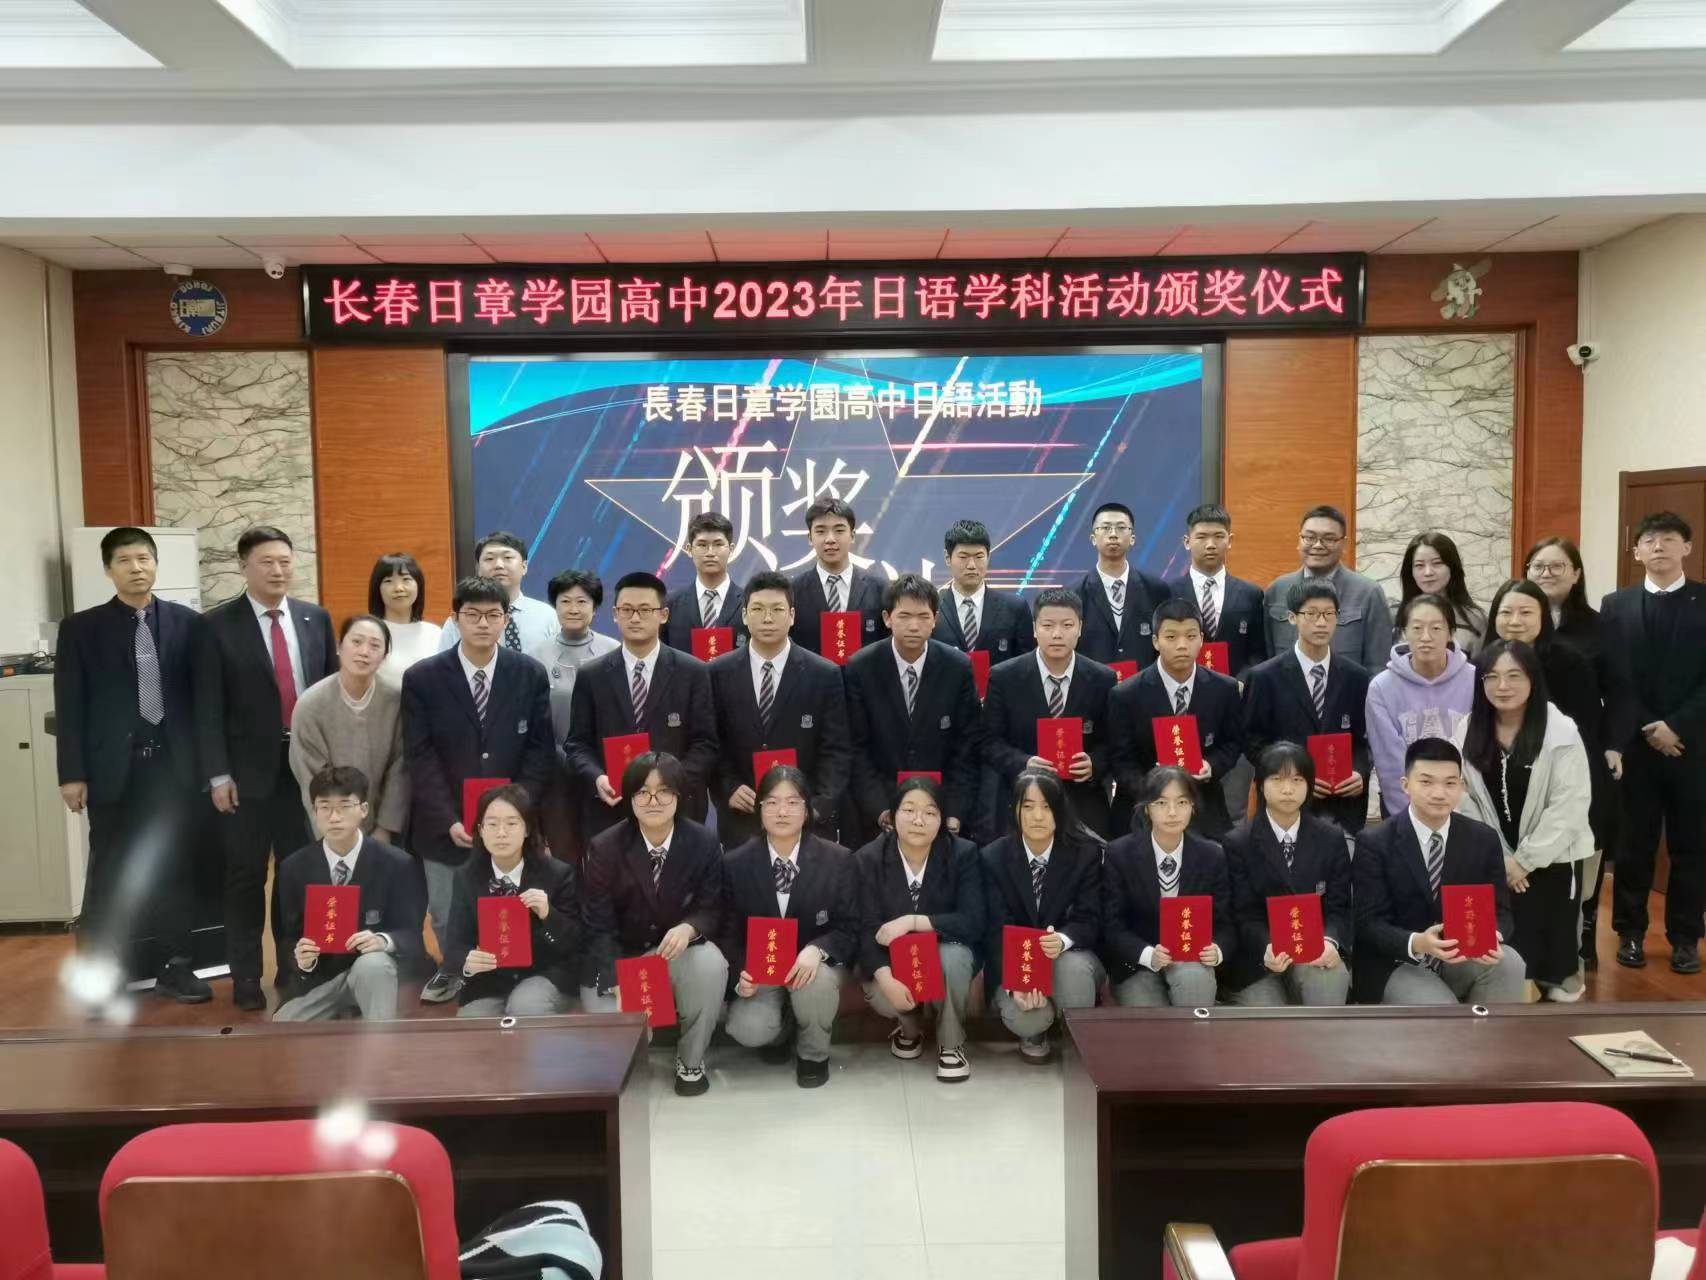 长春日章学园高中2023年日语学科活动圆满落幕